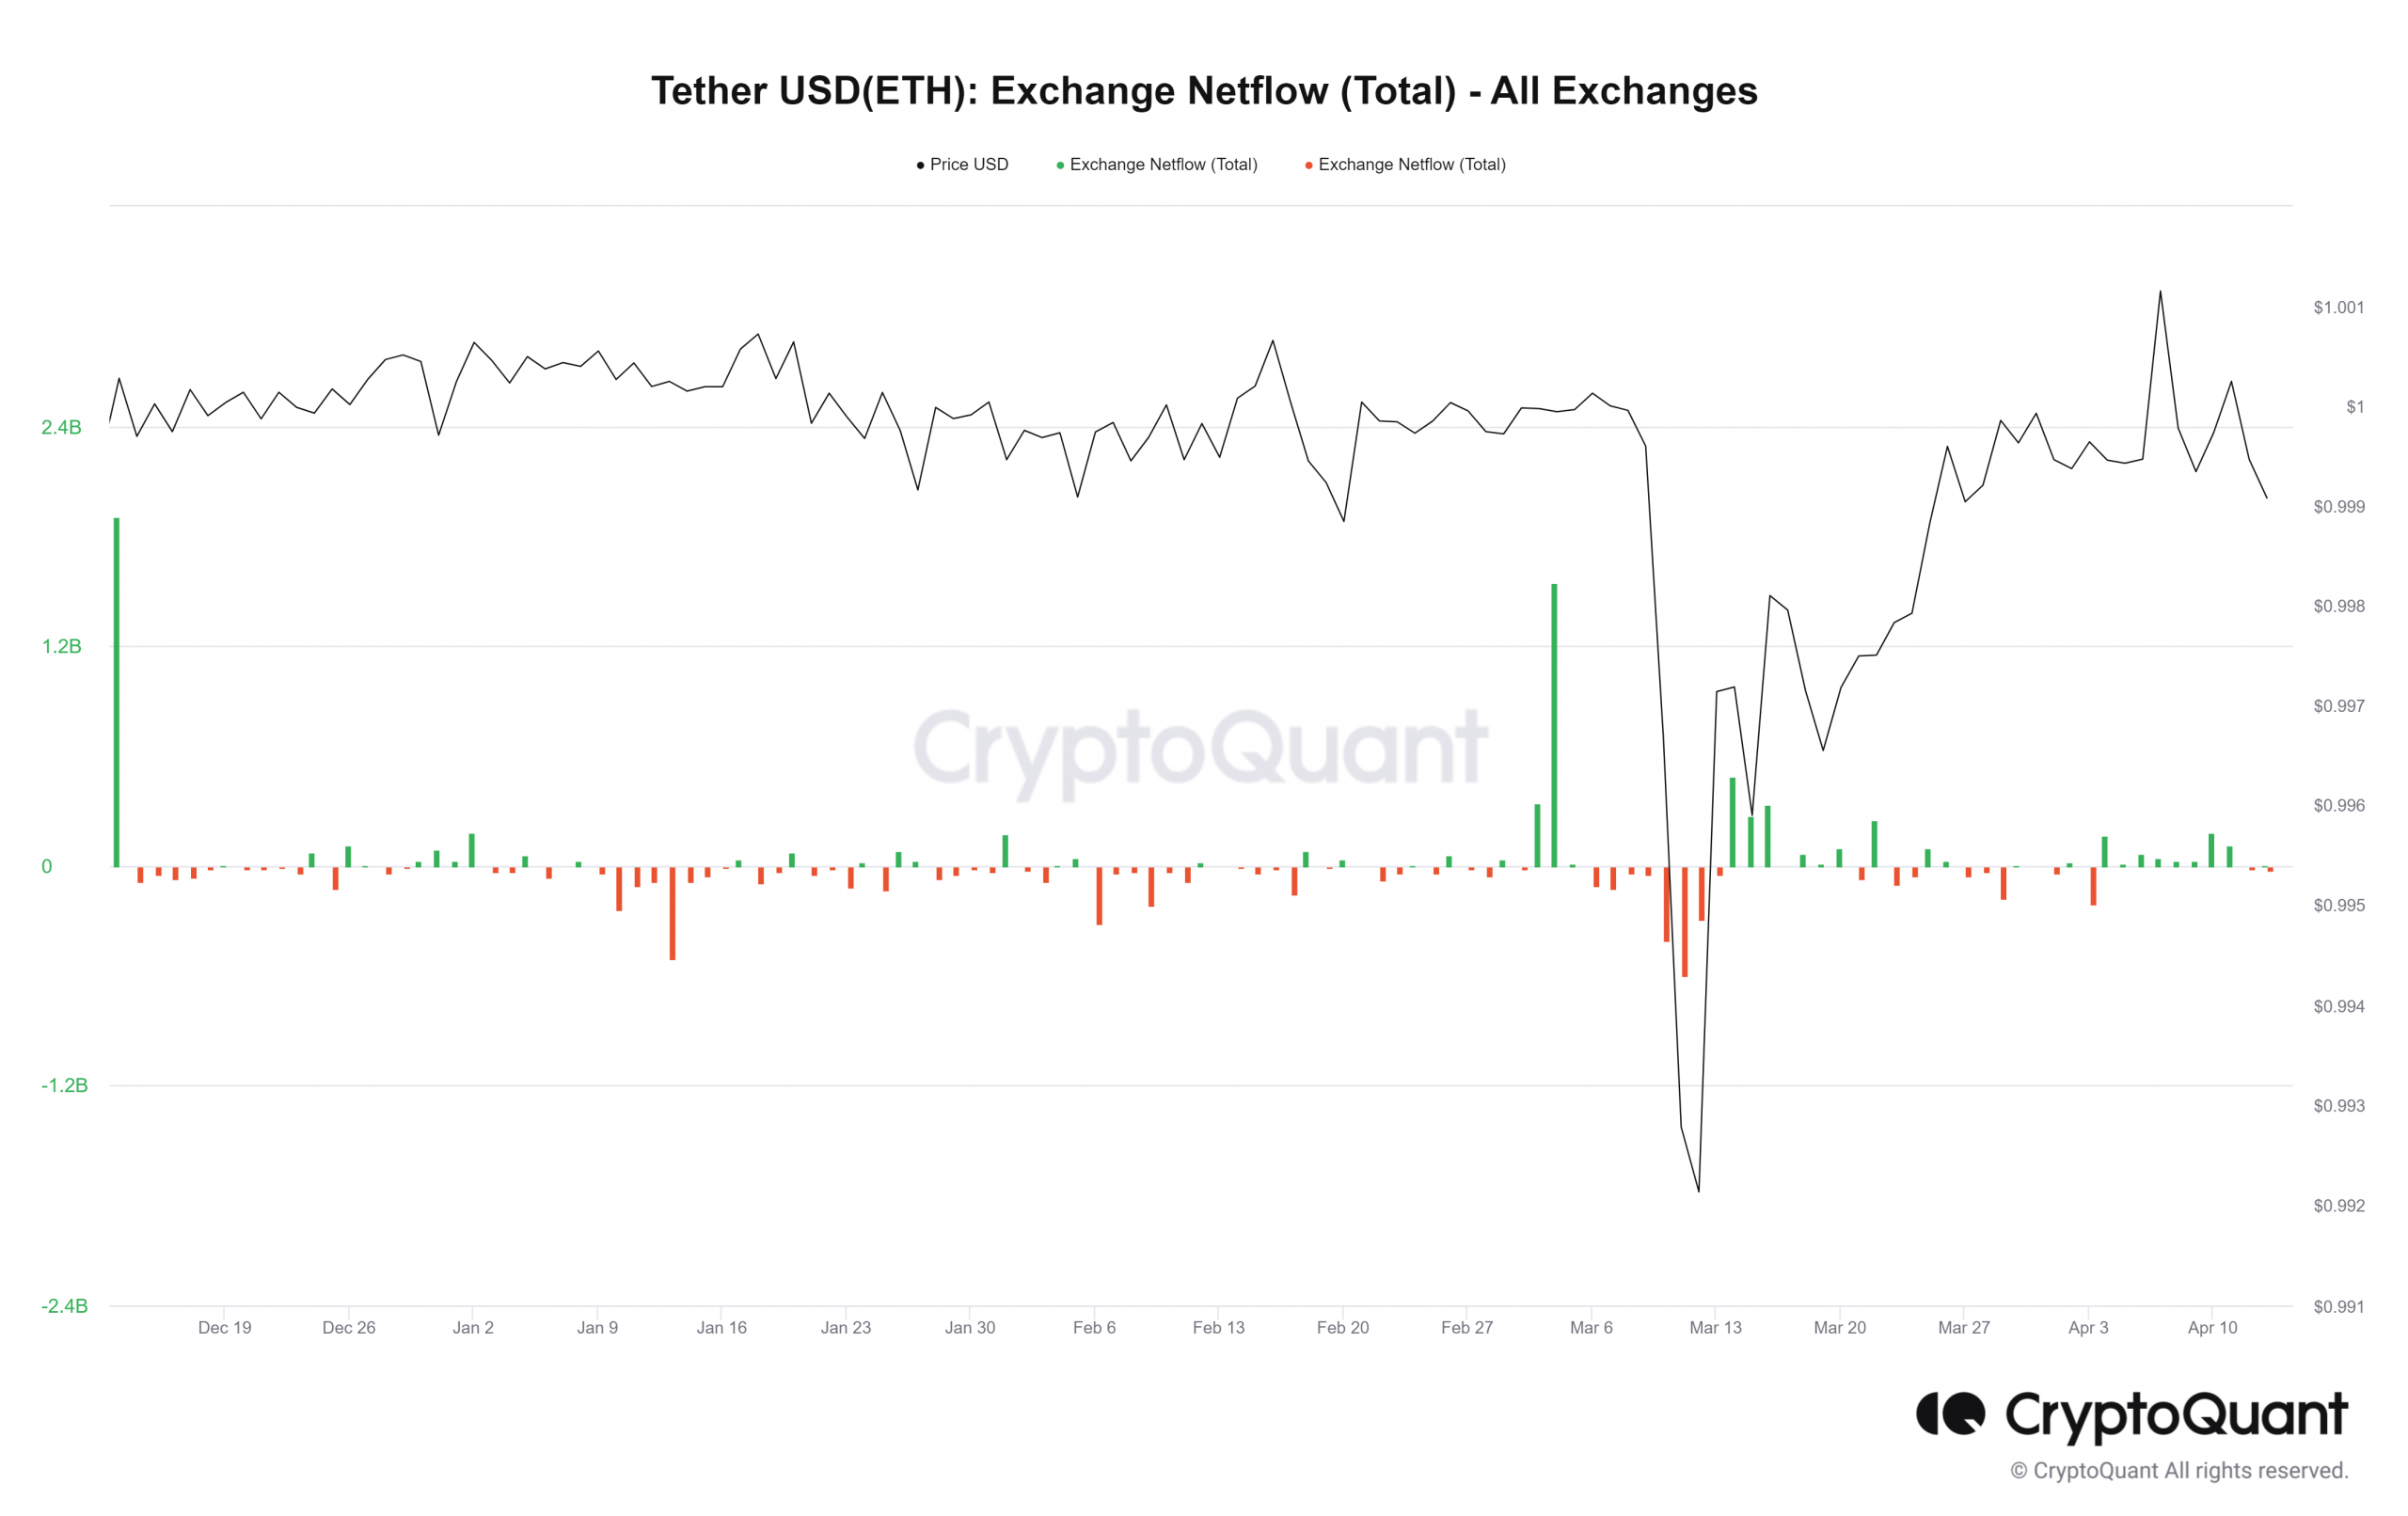 USDT exchange Netflow